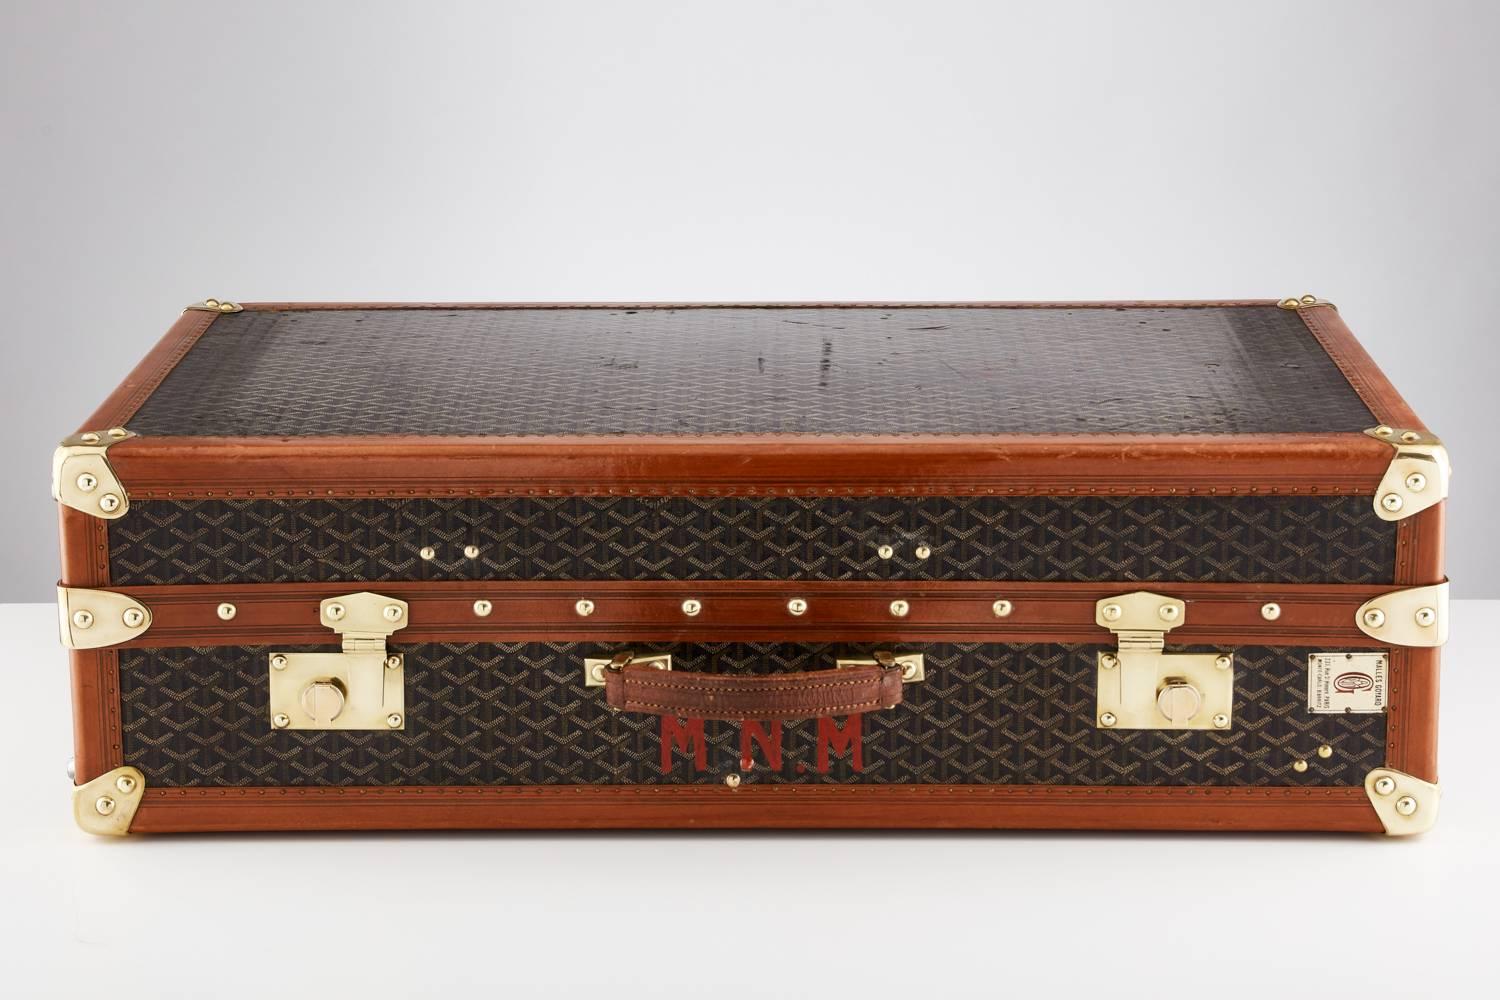 Goyard Garderobenkoffer aus dem 20. Jahrhundert, ca. 1930-1935.
Dieses schöne Gepäckstück ist durchgehend signiert.
Die Beschläge, insbesondere die Schlösser, sind von hervorragender Qualität.
Das Innere ist mit Schubladen ausgestattet, auf deren